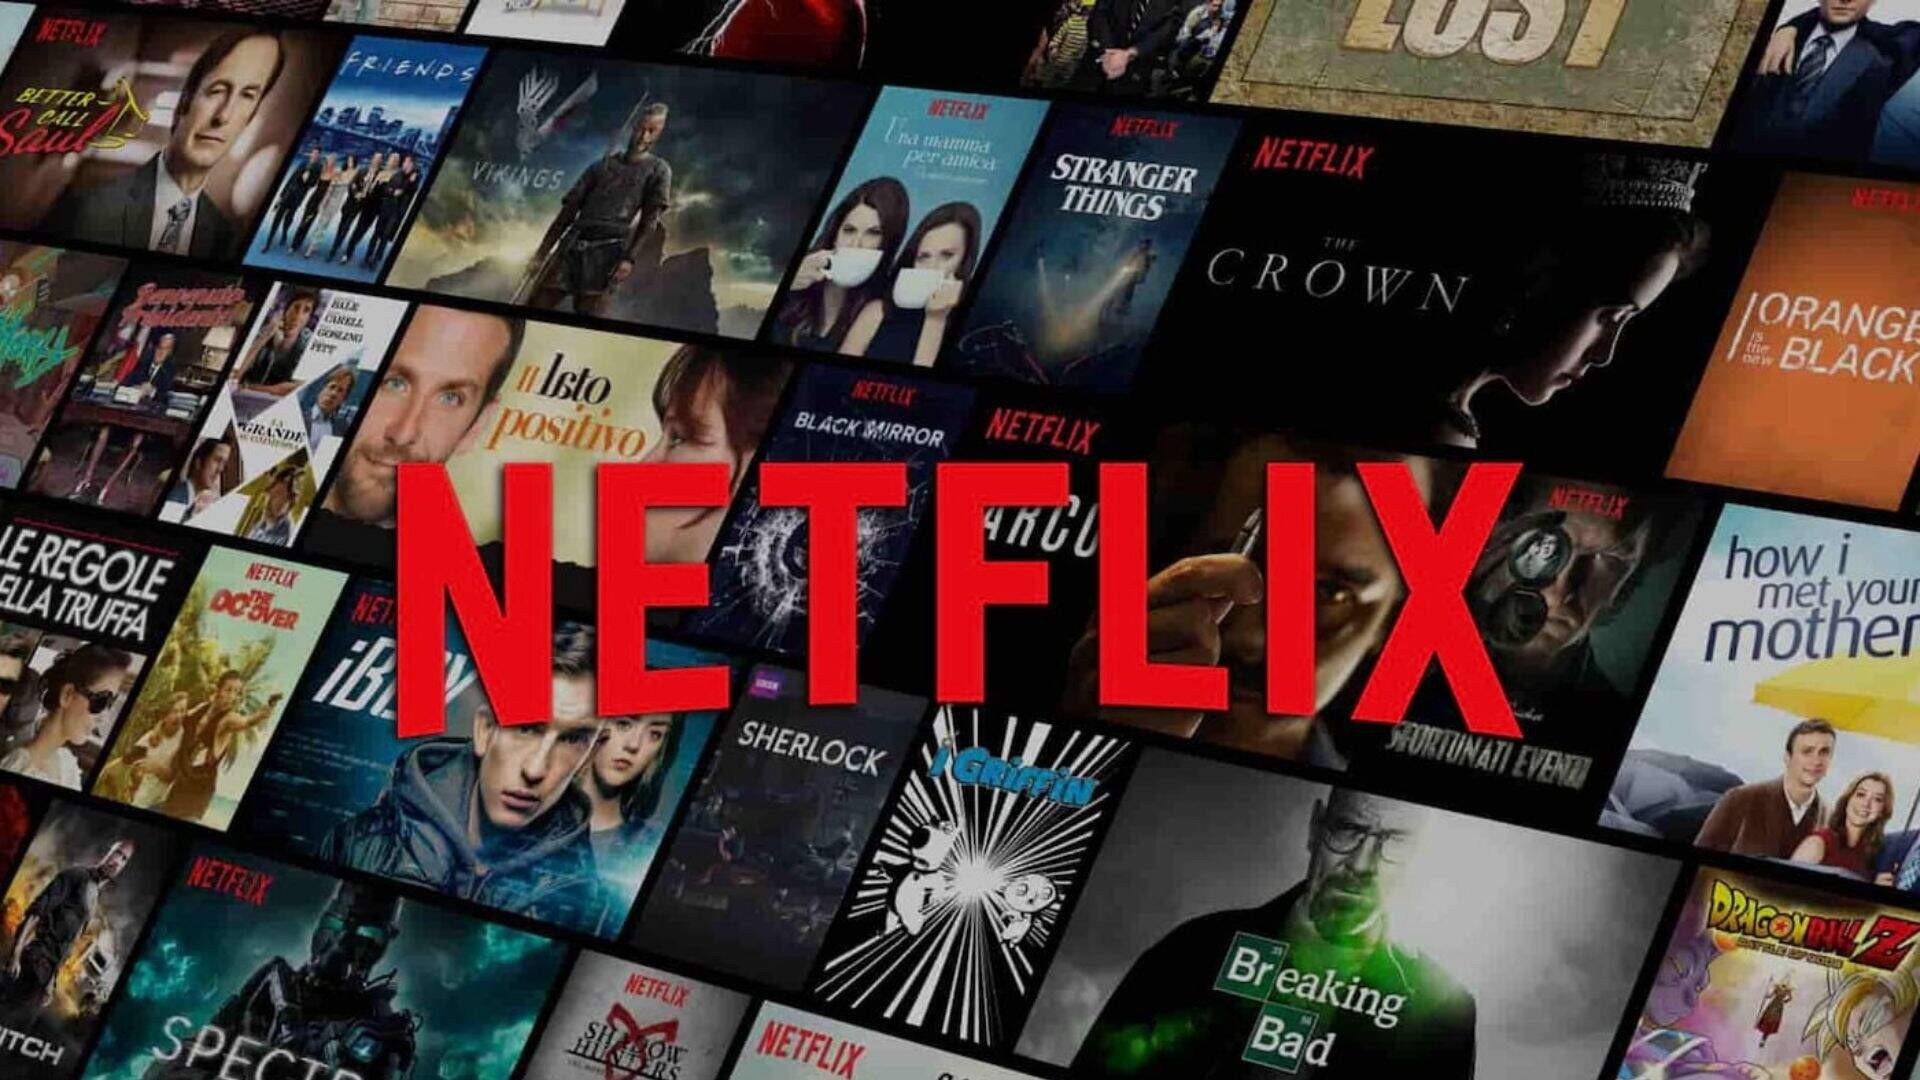 Está falindo? Netflix cancela opção de plano básico no Brasil e atitude preocupa usuários do streaming